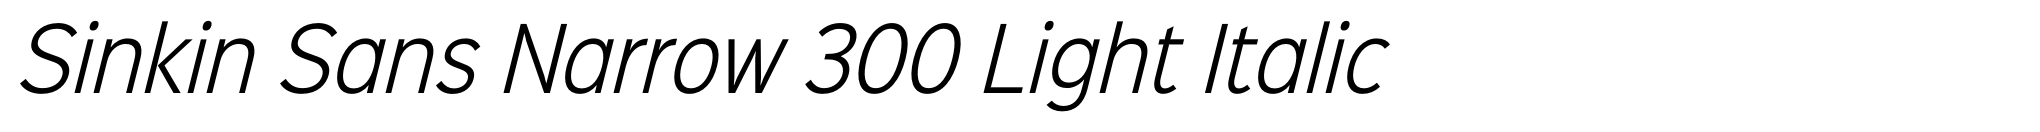 Sinkin Sans Narrow 300 Light Italic image